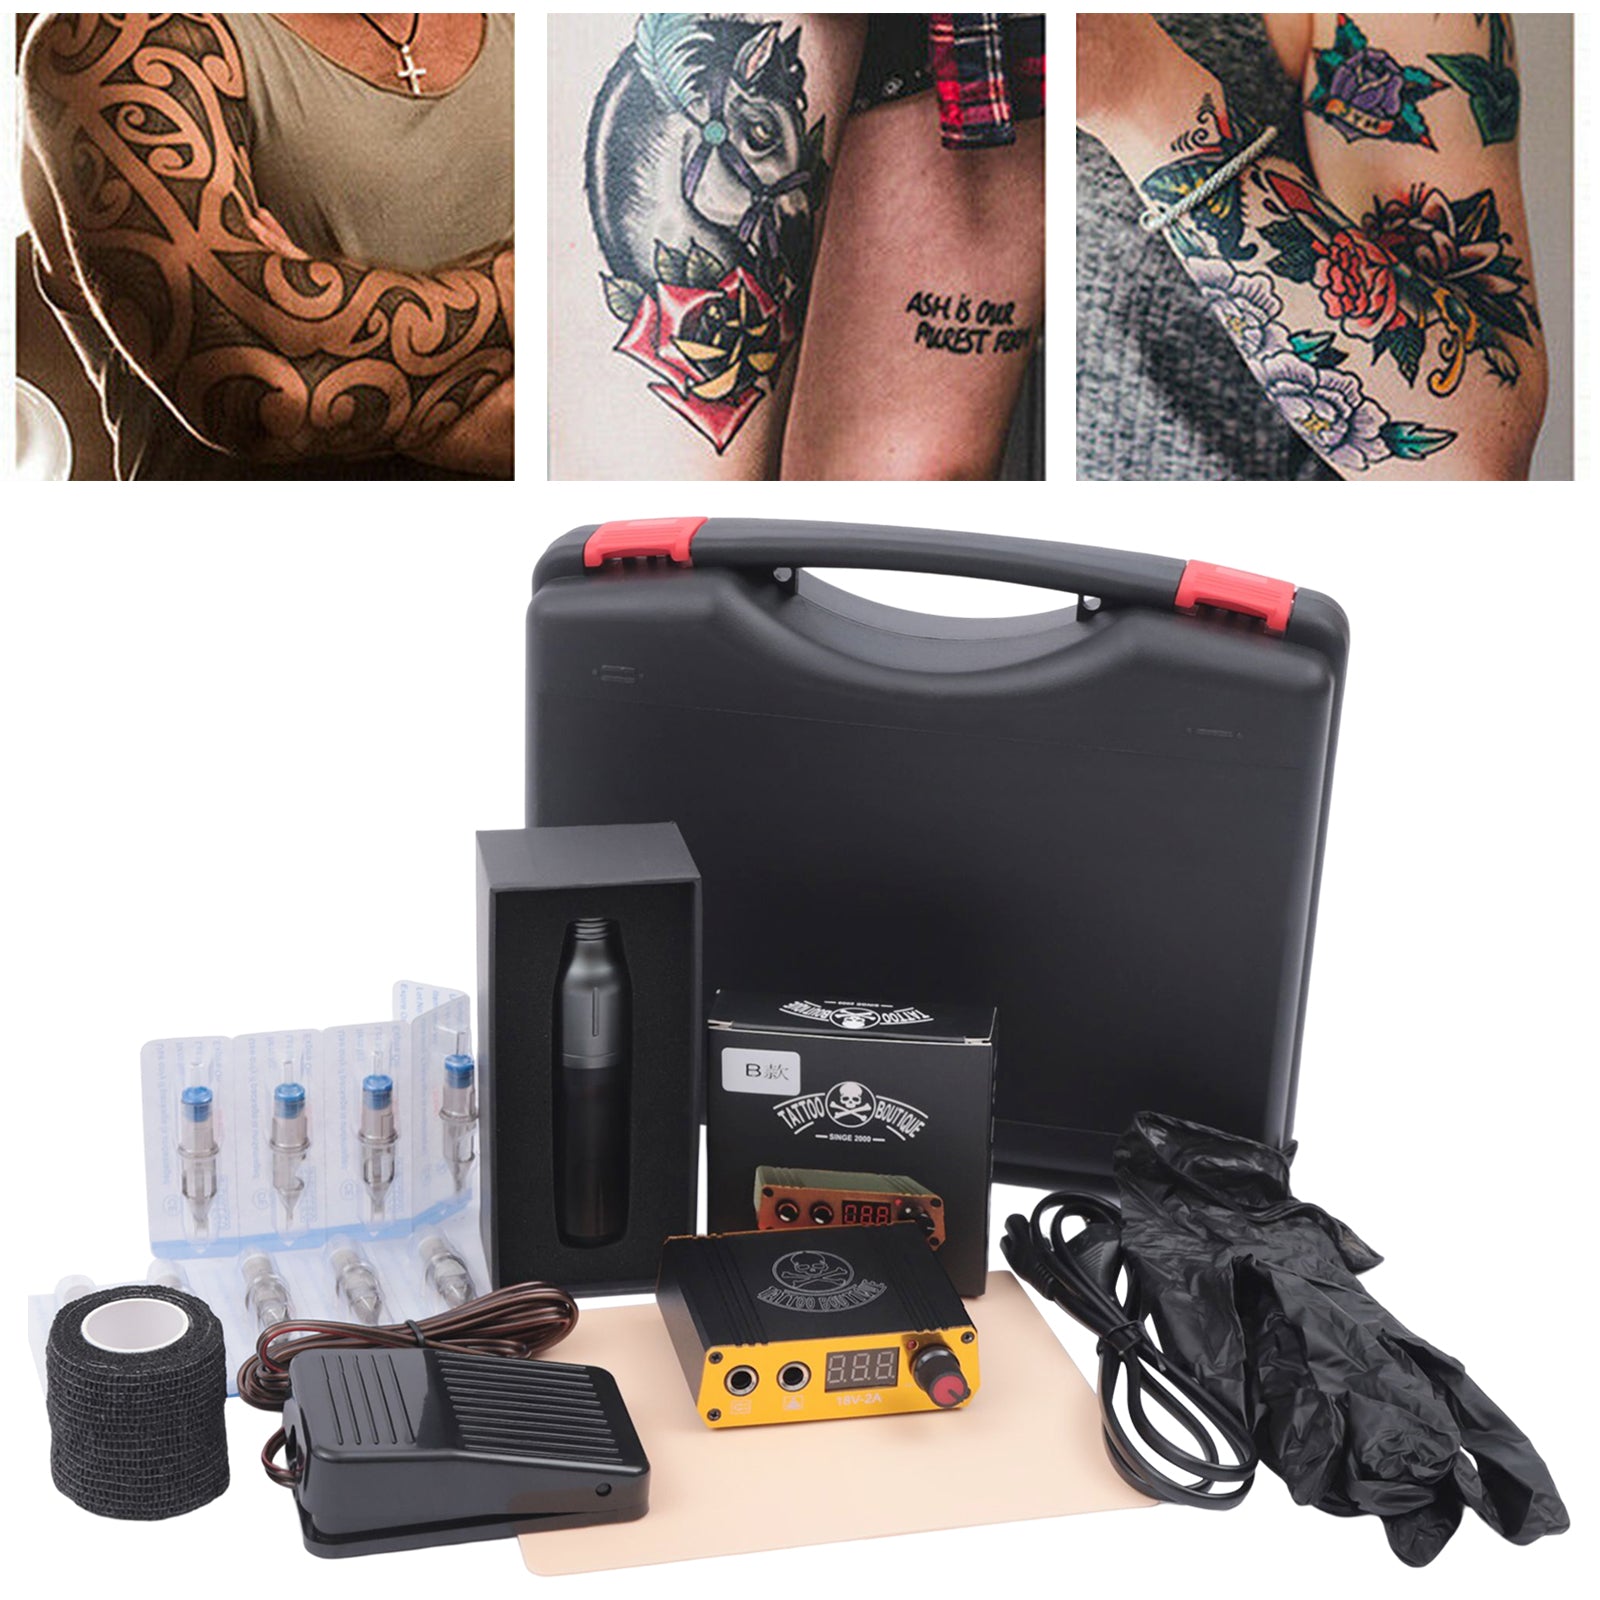 Machine à tatouer rotative avec stylo à tatouer complet avec 20 cartouches d'aiguilles, affichage numérique, alimentation